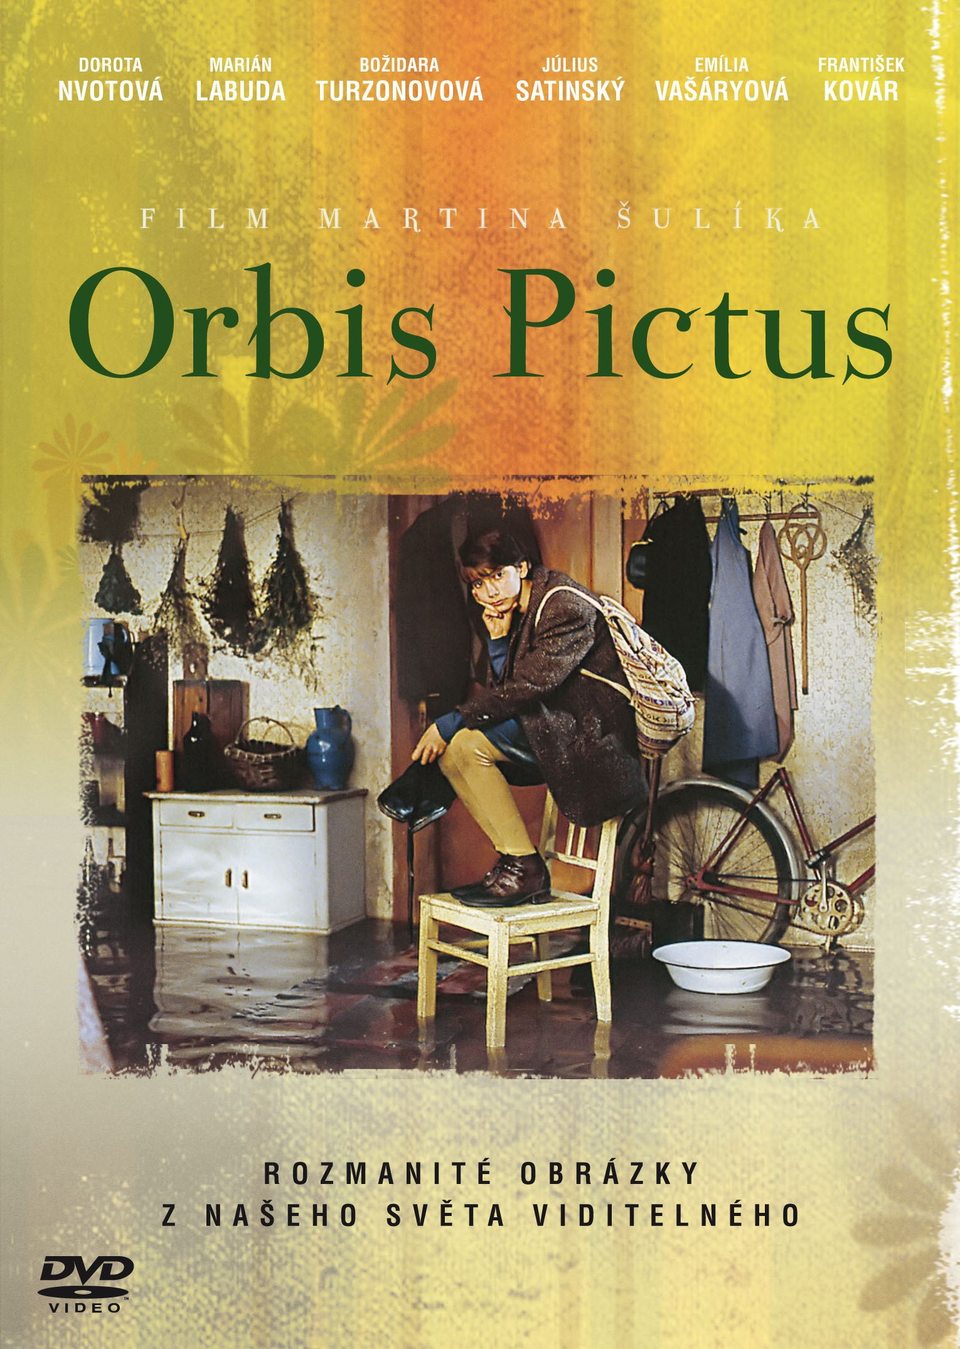 Film Orbis pictus